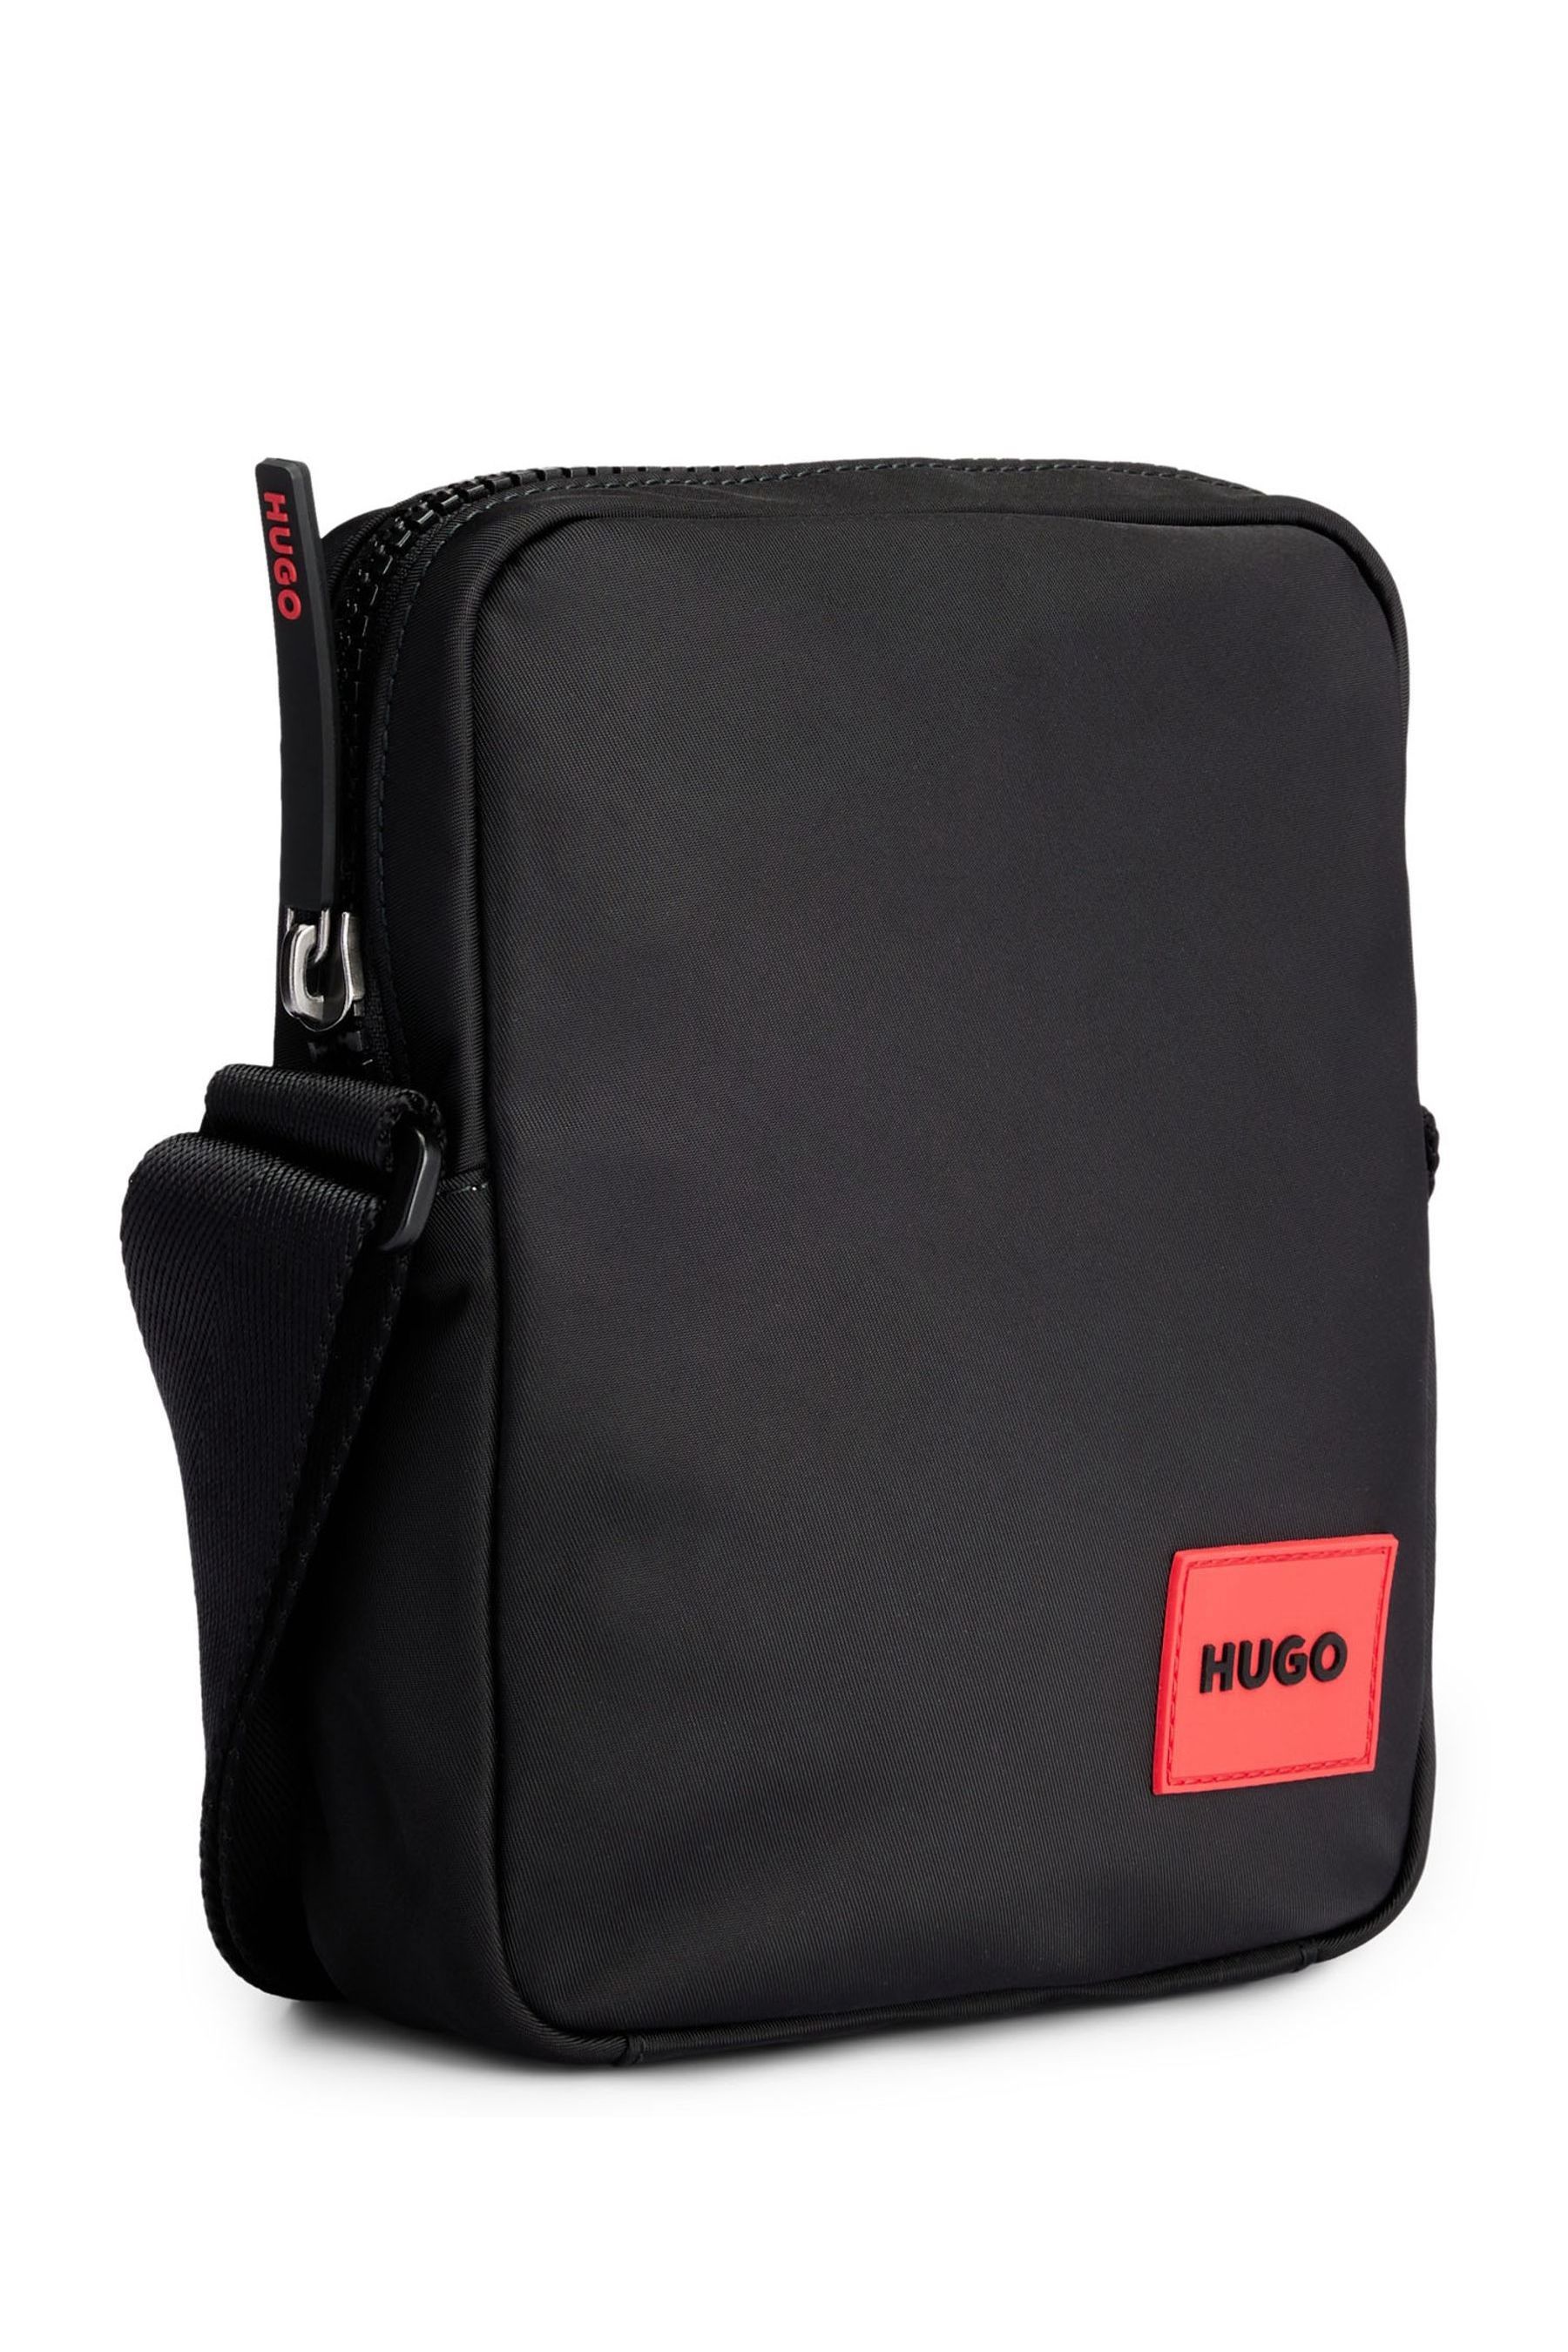 Buy HUGO Ethon Black Reporter Bag from the Next UK online shop